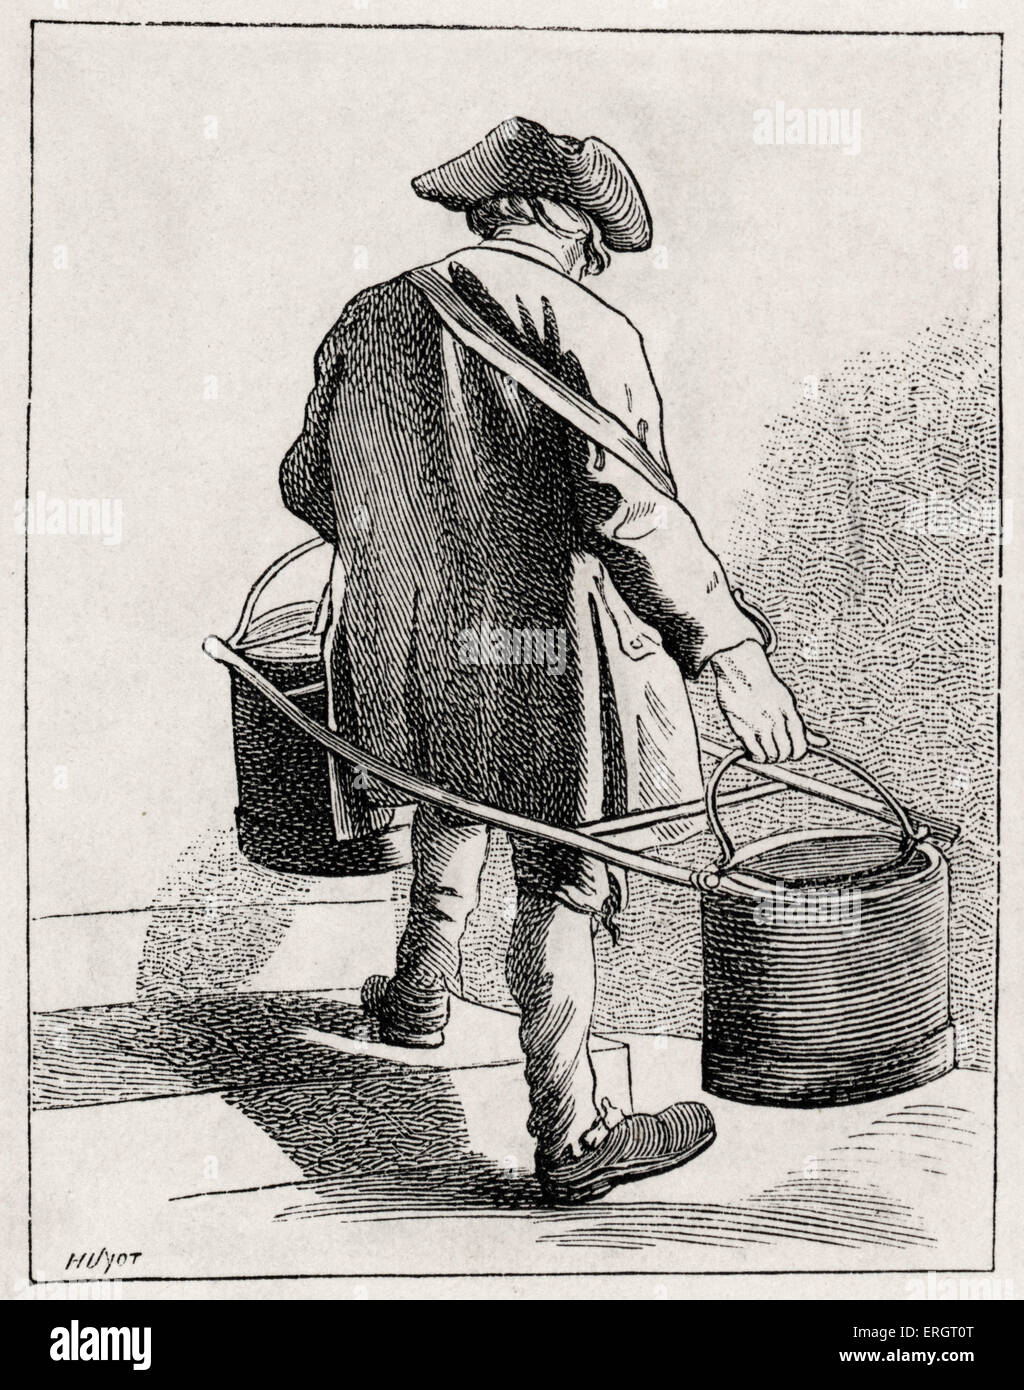 La vita quotidiana nella storia francese: un vettore acqua nel XVIII secolo a Parigi, Francia. Classe operaia, poveri, rustico, sostentamento, durante Foto Stock